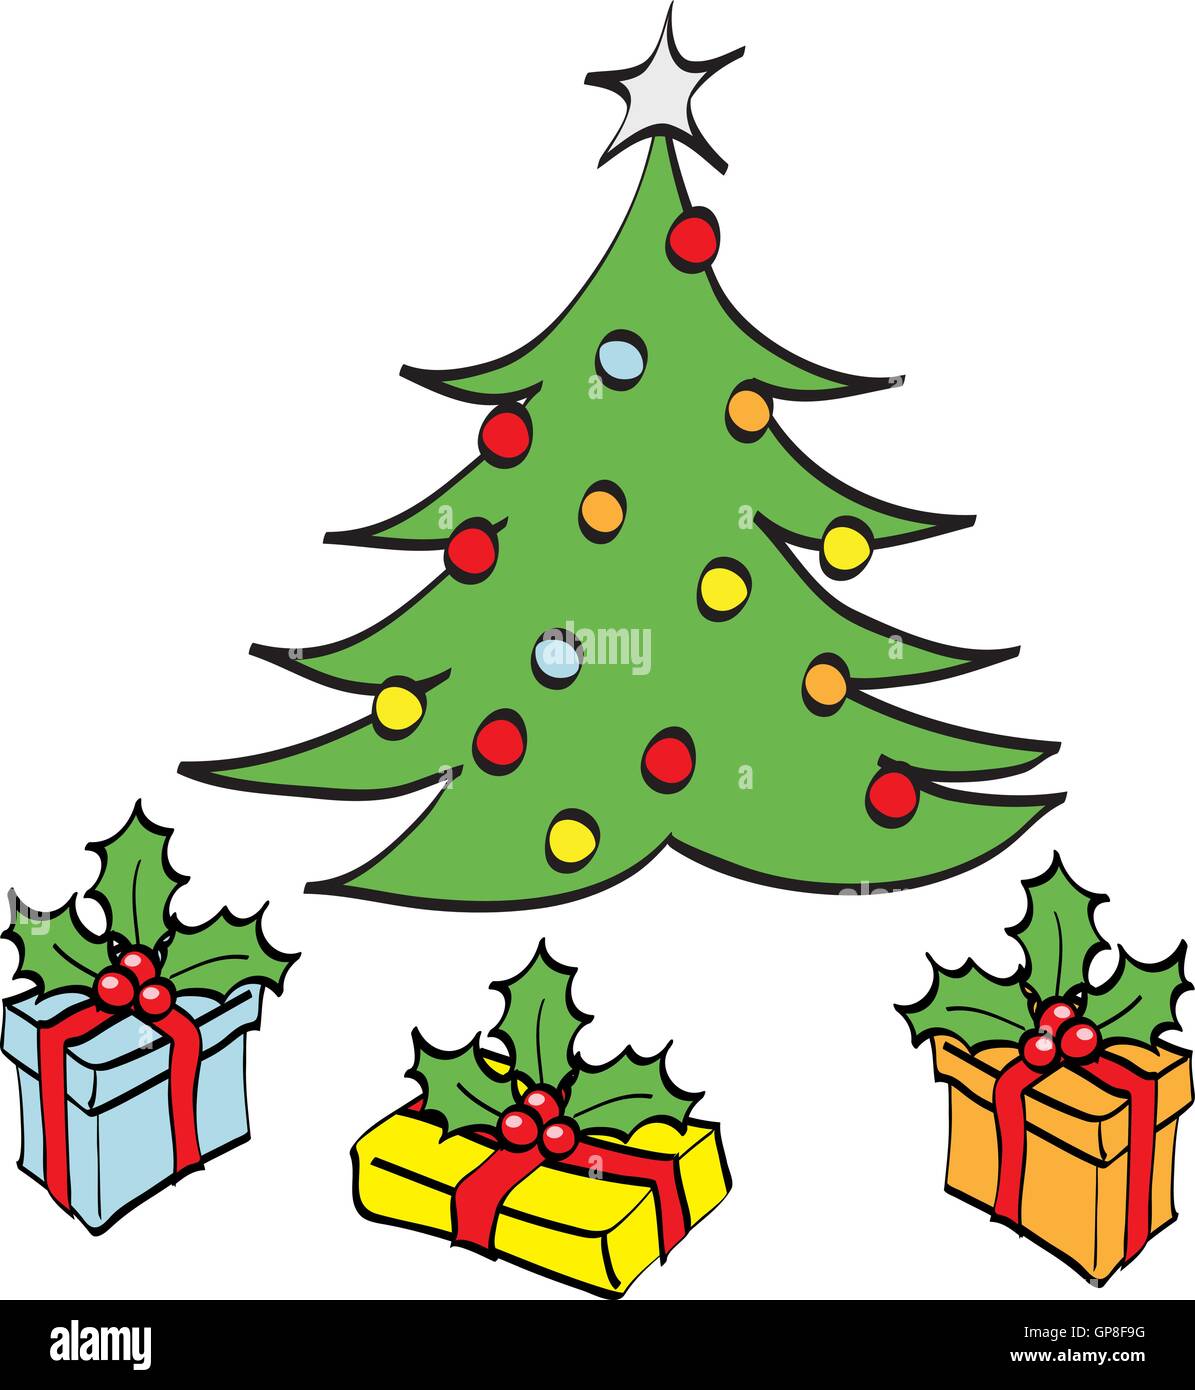 Weihnachtsbaum Und Geschenke Cartoon Stock Vektorgrafik Alamy